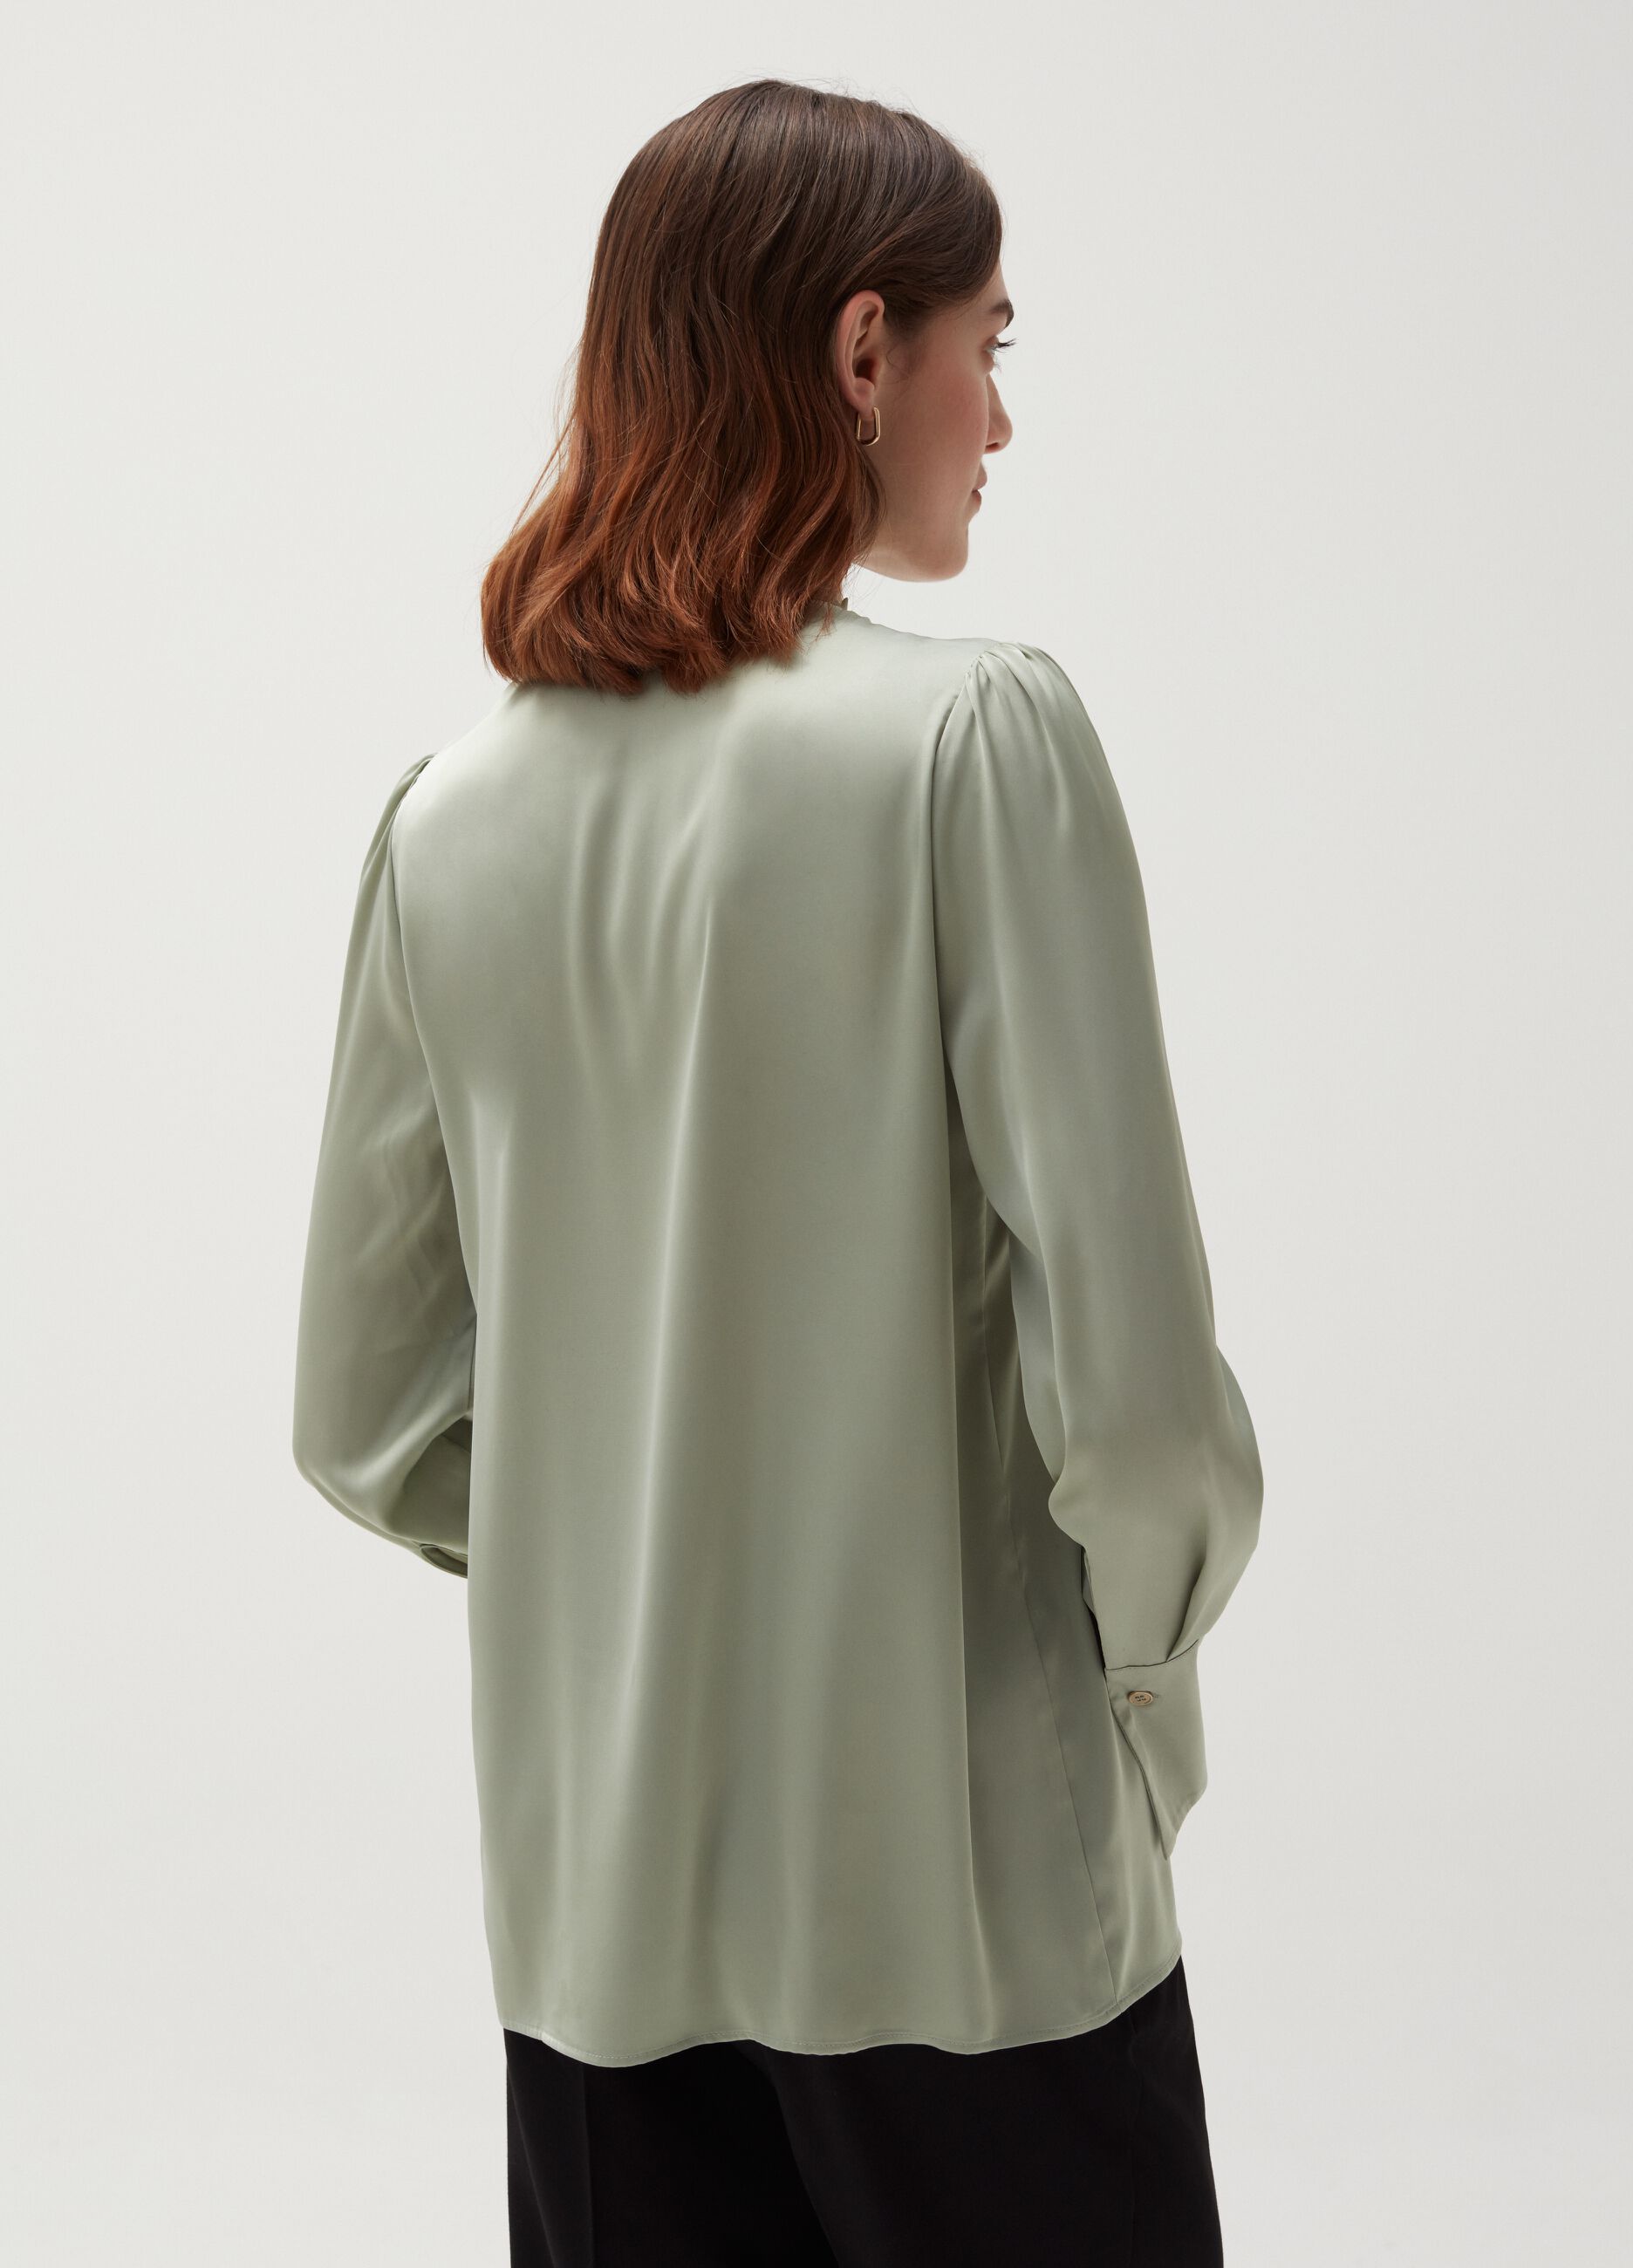 Satin blouse with flounce